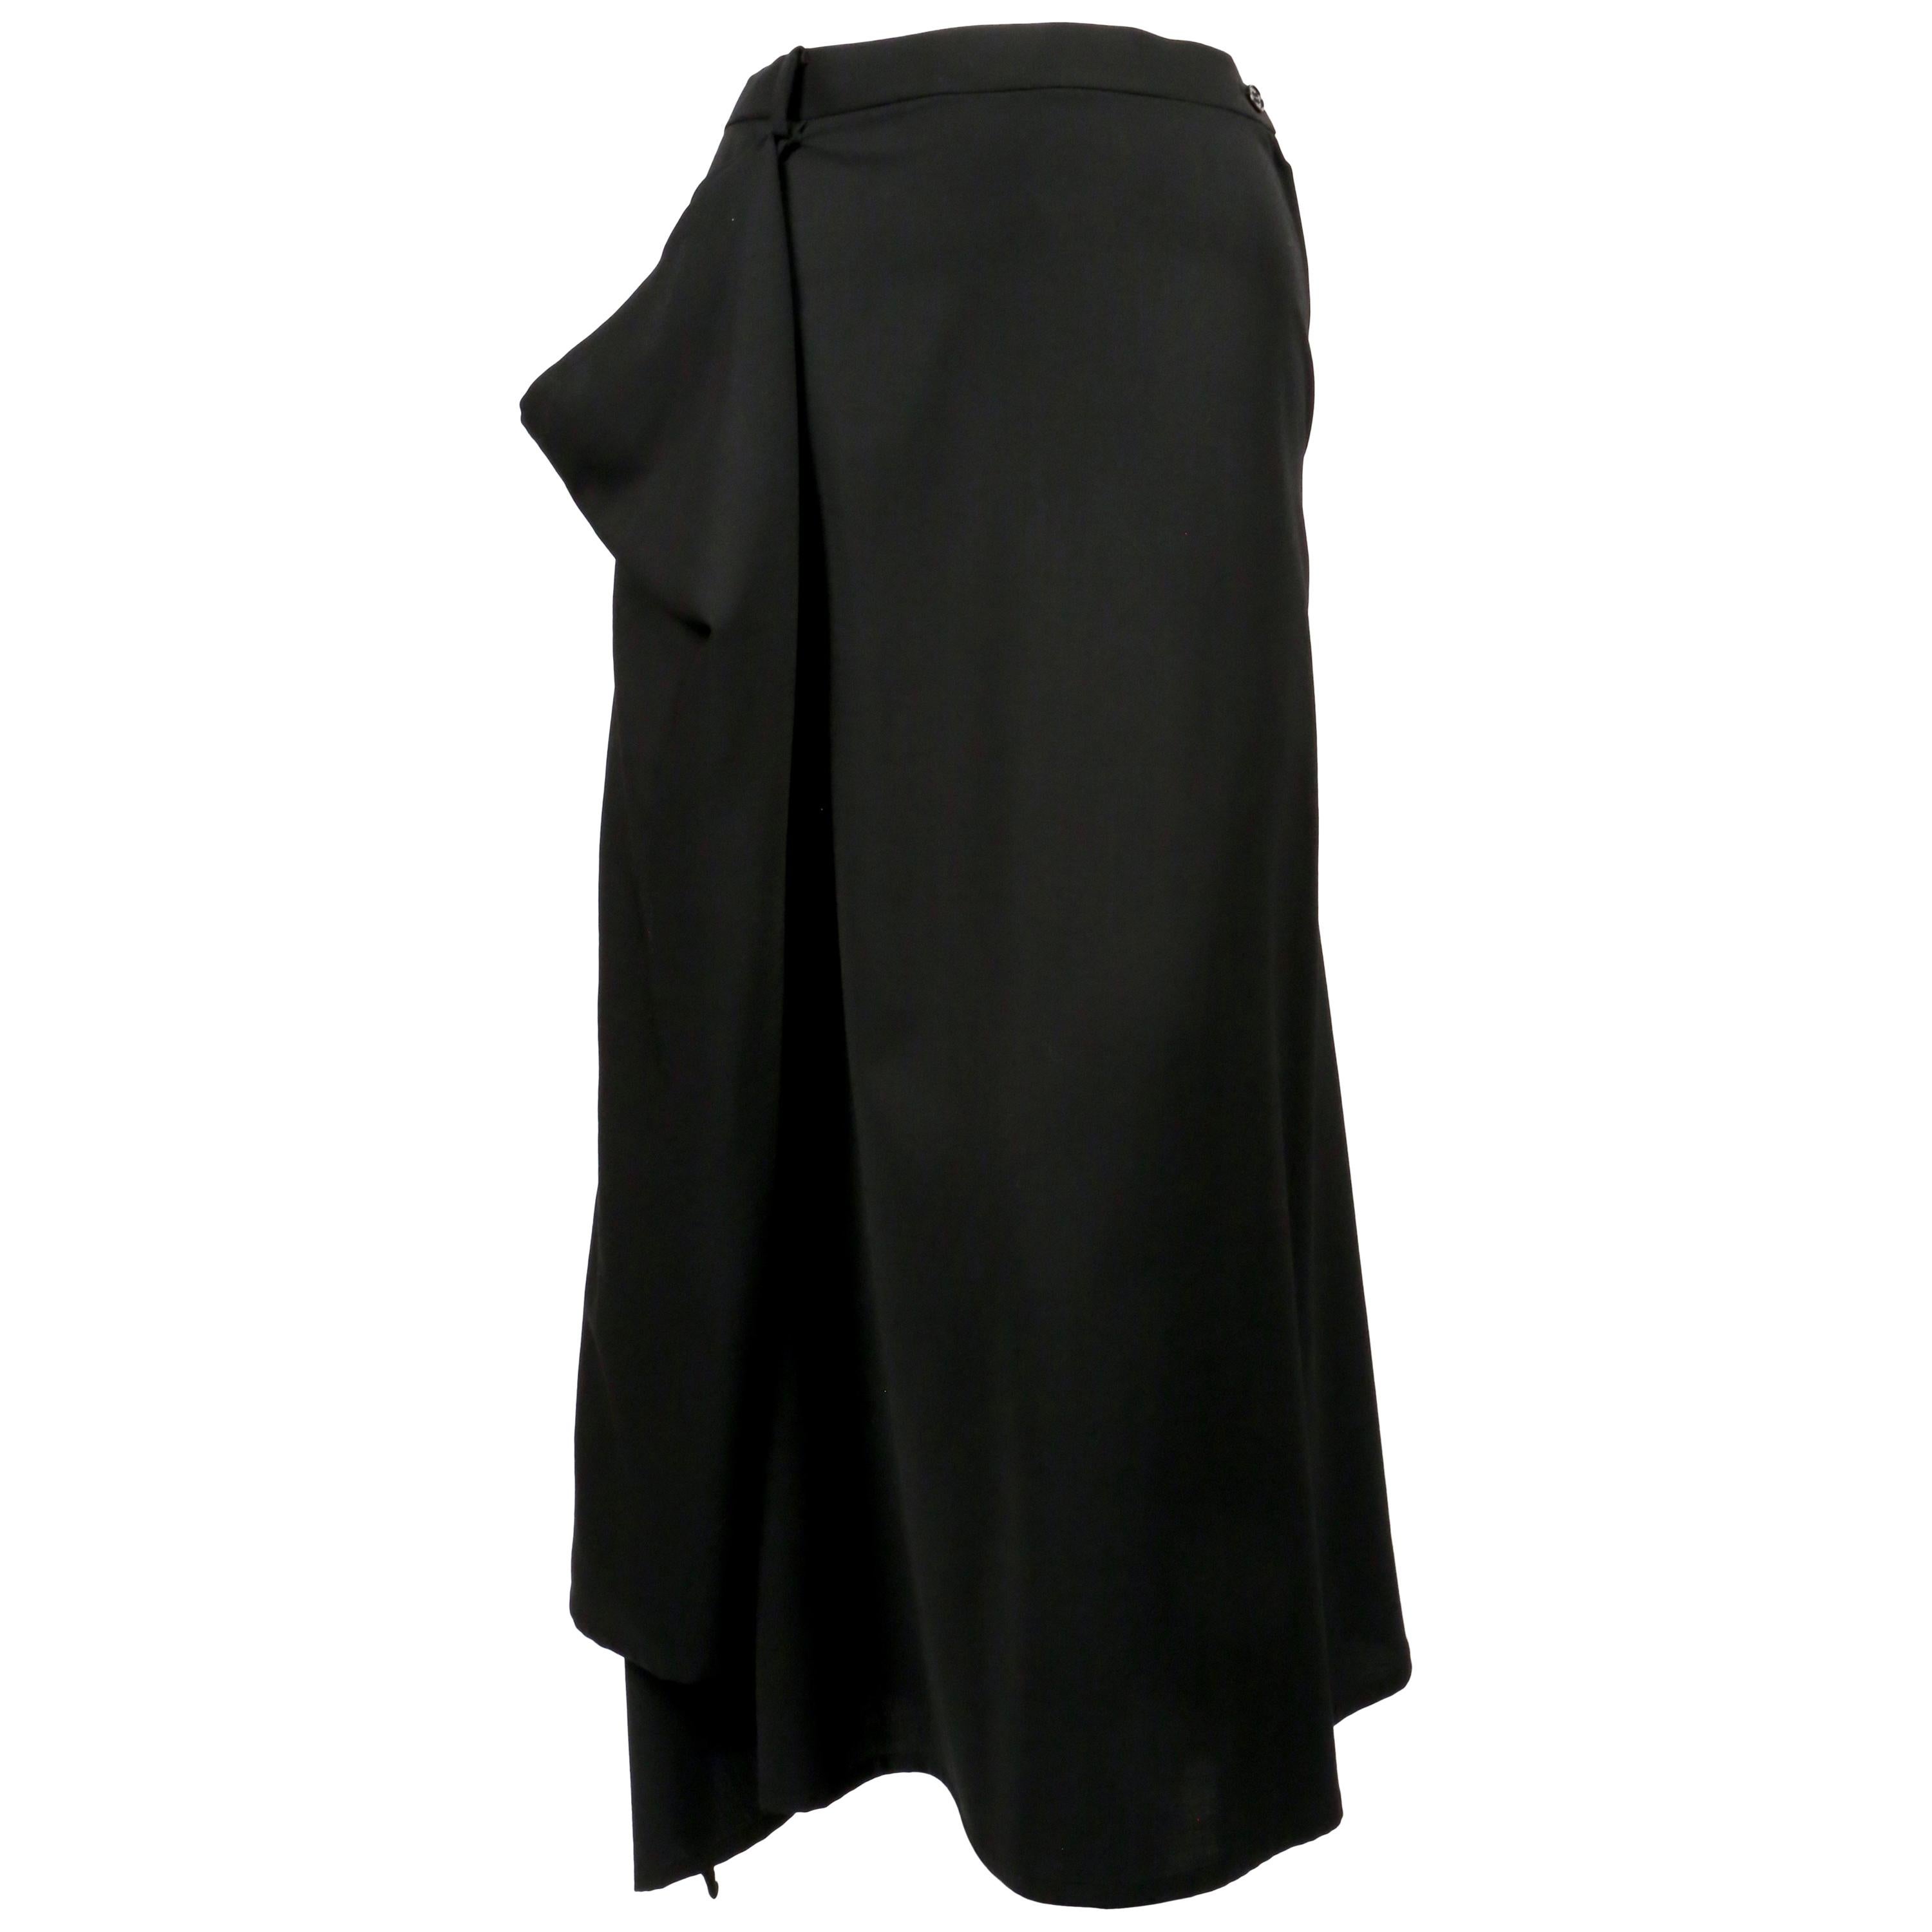 HOMMA draped black wool skirt For Sale